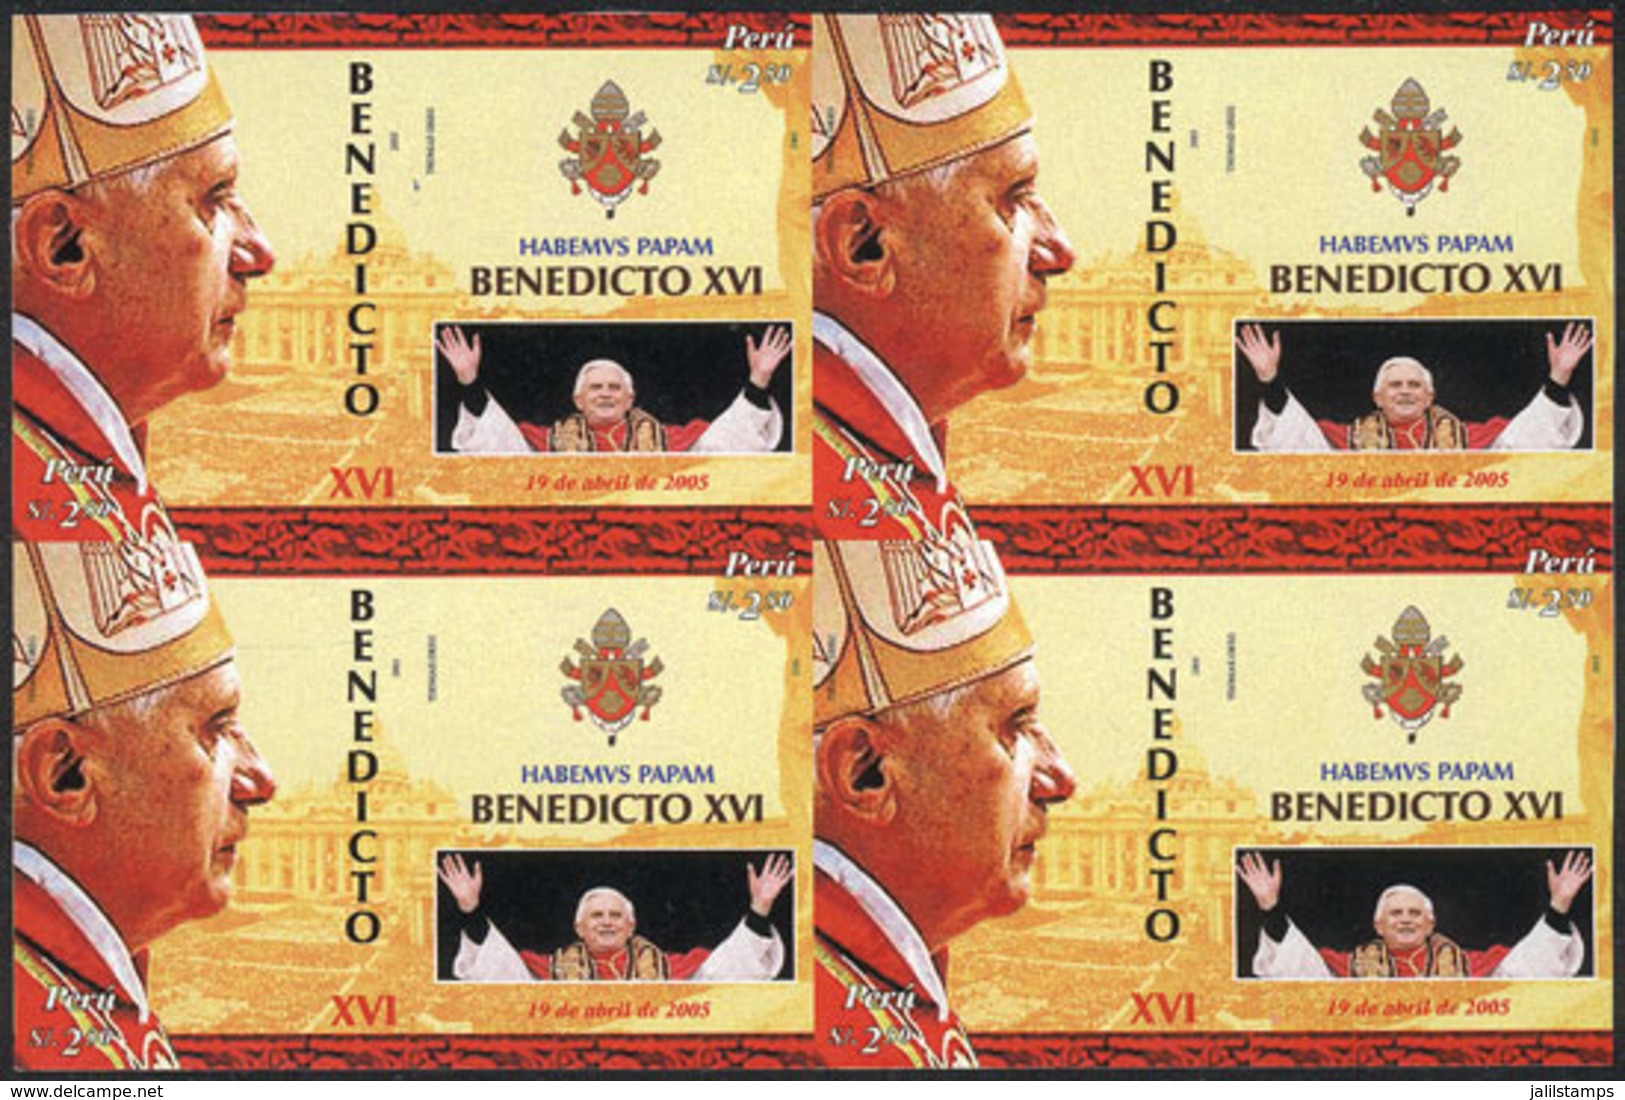 1660 PERU: Sc.1489, 2006 Pope Benedict XVI, IMPERFORATE BLOCK OF 4 Consisting Of 4 Sets, Excellent Quality, Rare! - Perù